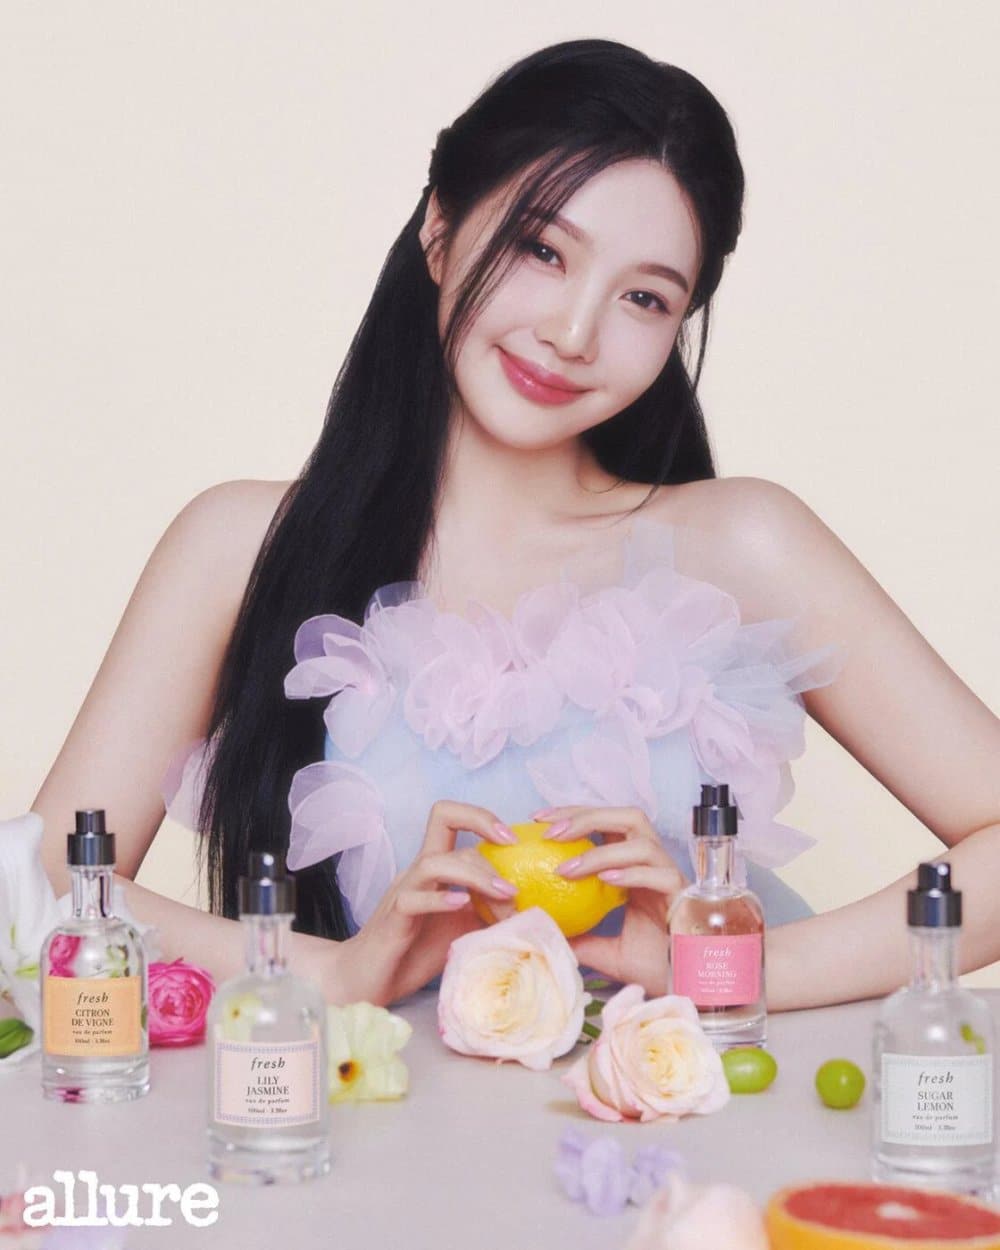 Джой из Red Velvet в новой весенней фотосессии "Allure Korea" для бренда ароматов Fresh